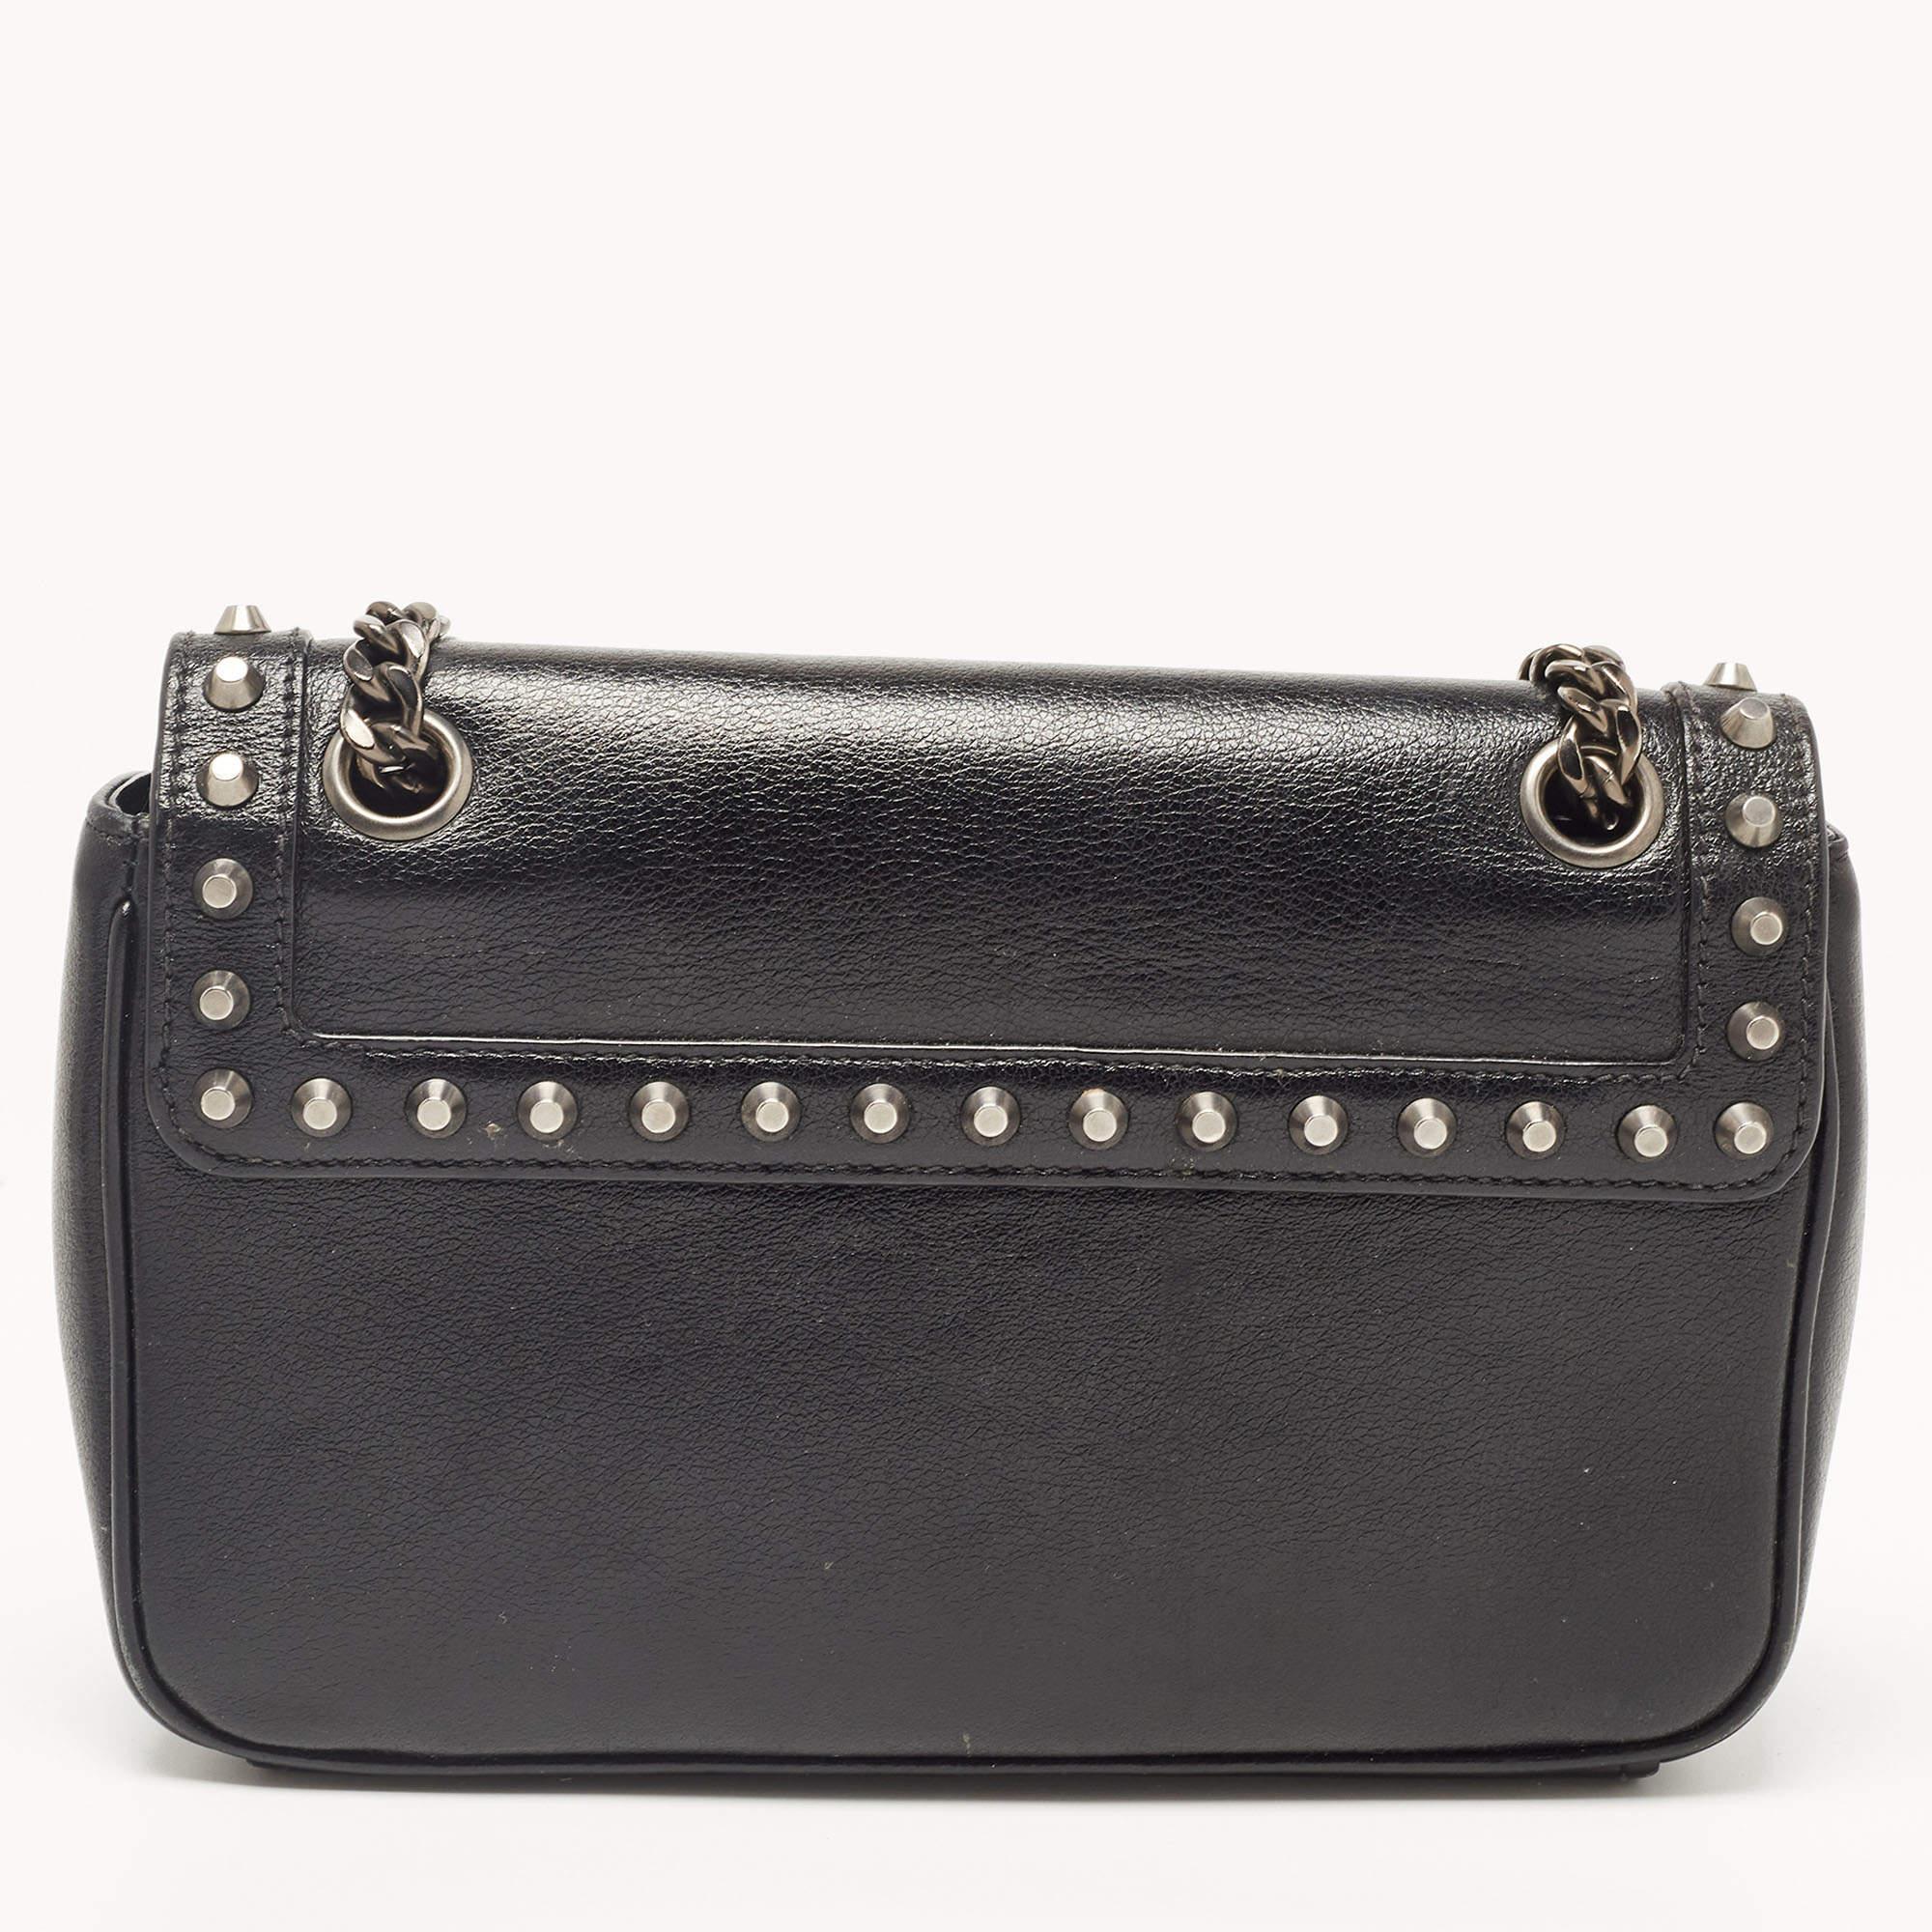 Prada Black Glace Leather Studded Flap Shoulder Bag 4